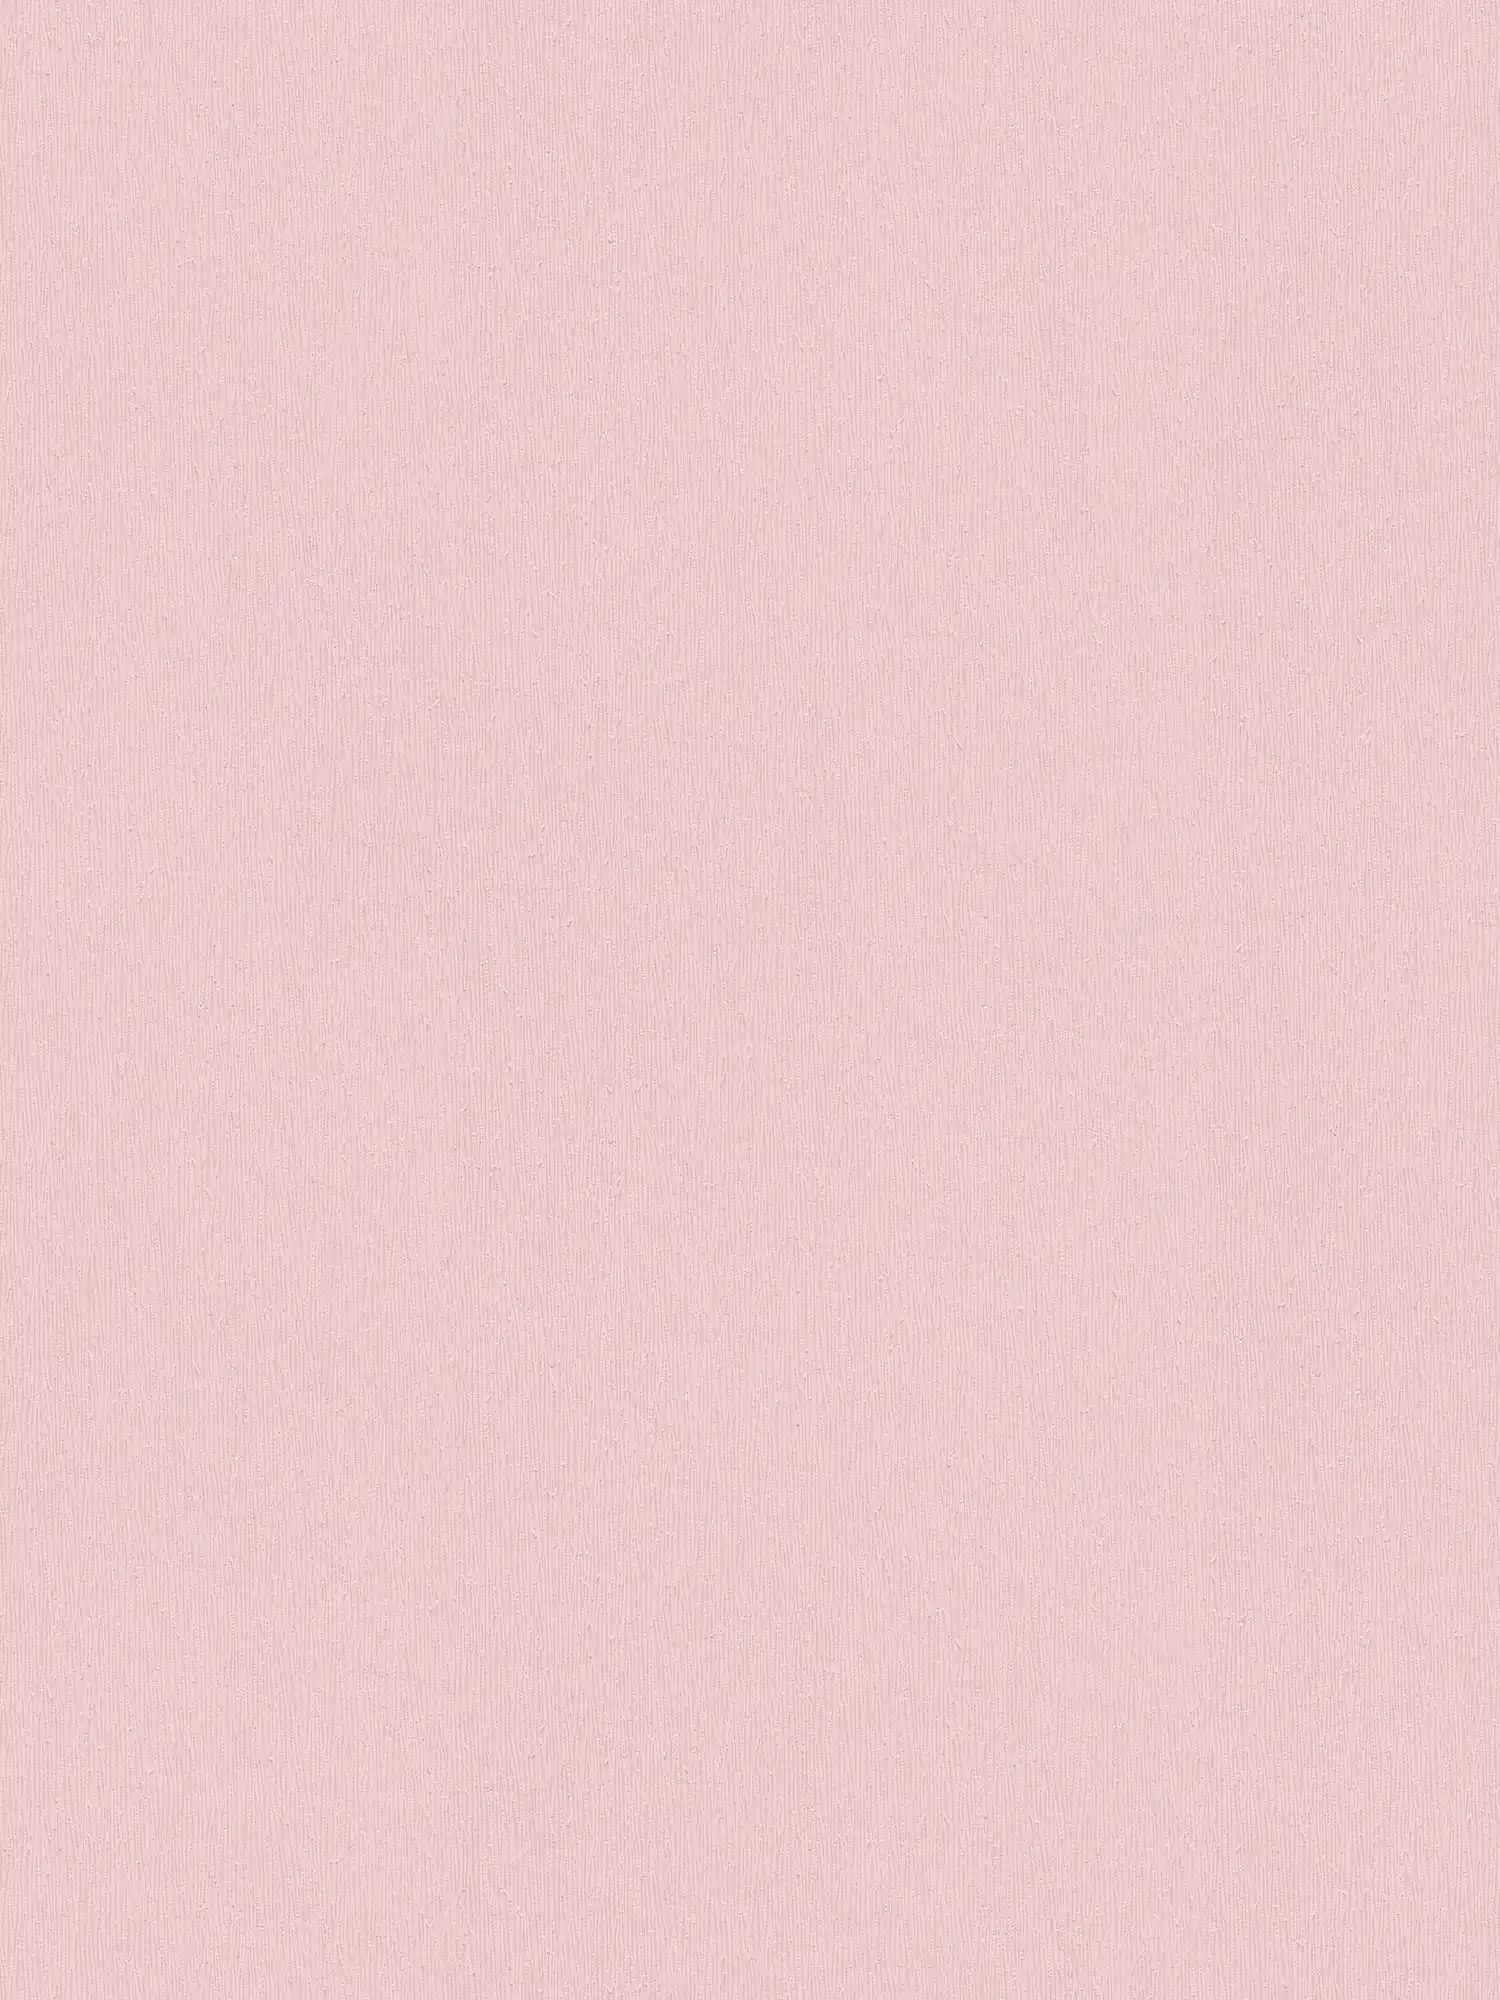 Carta da parati in tessuto non tessuto rosa baby con disegno monocromatico - Rosa
